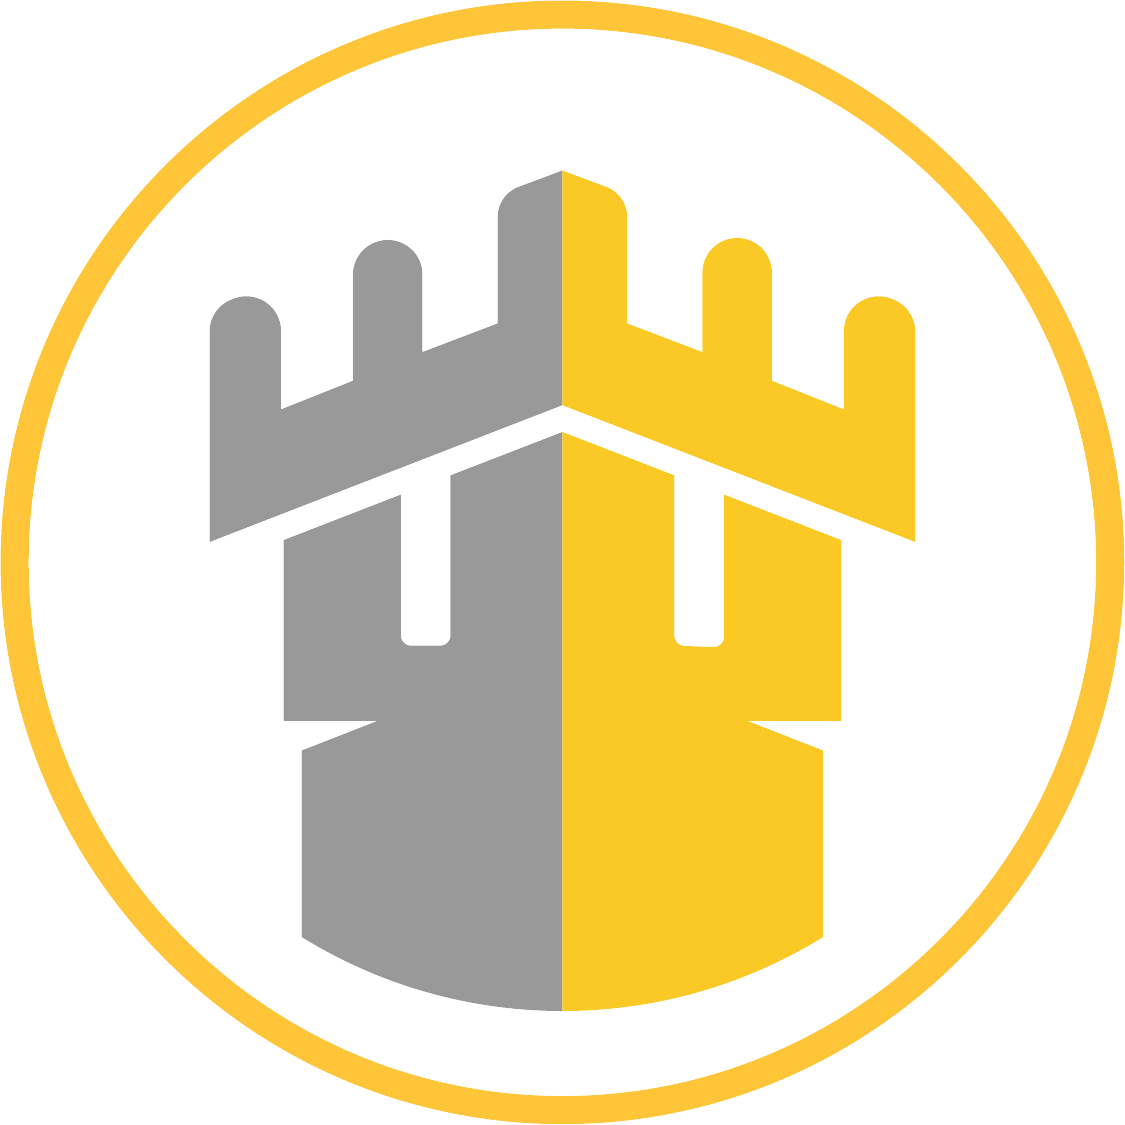 Free Citadels logo